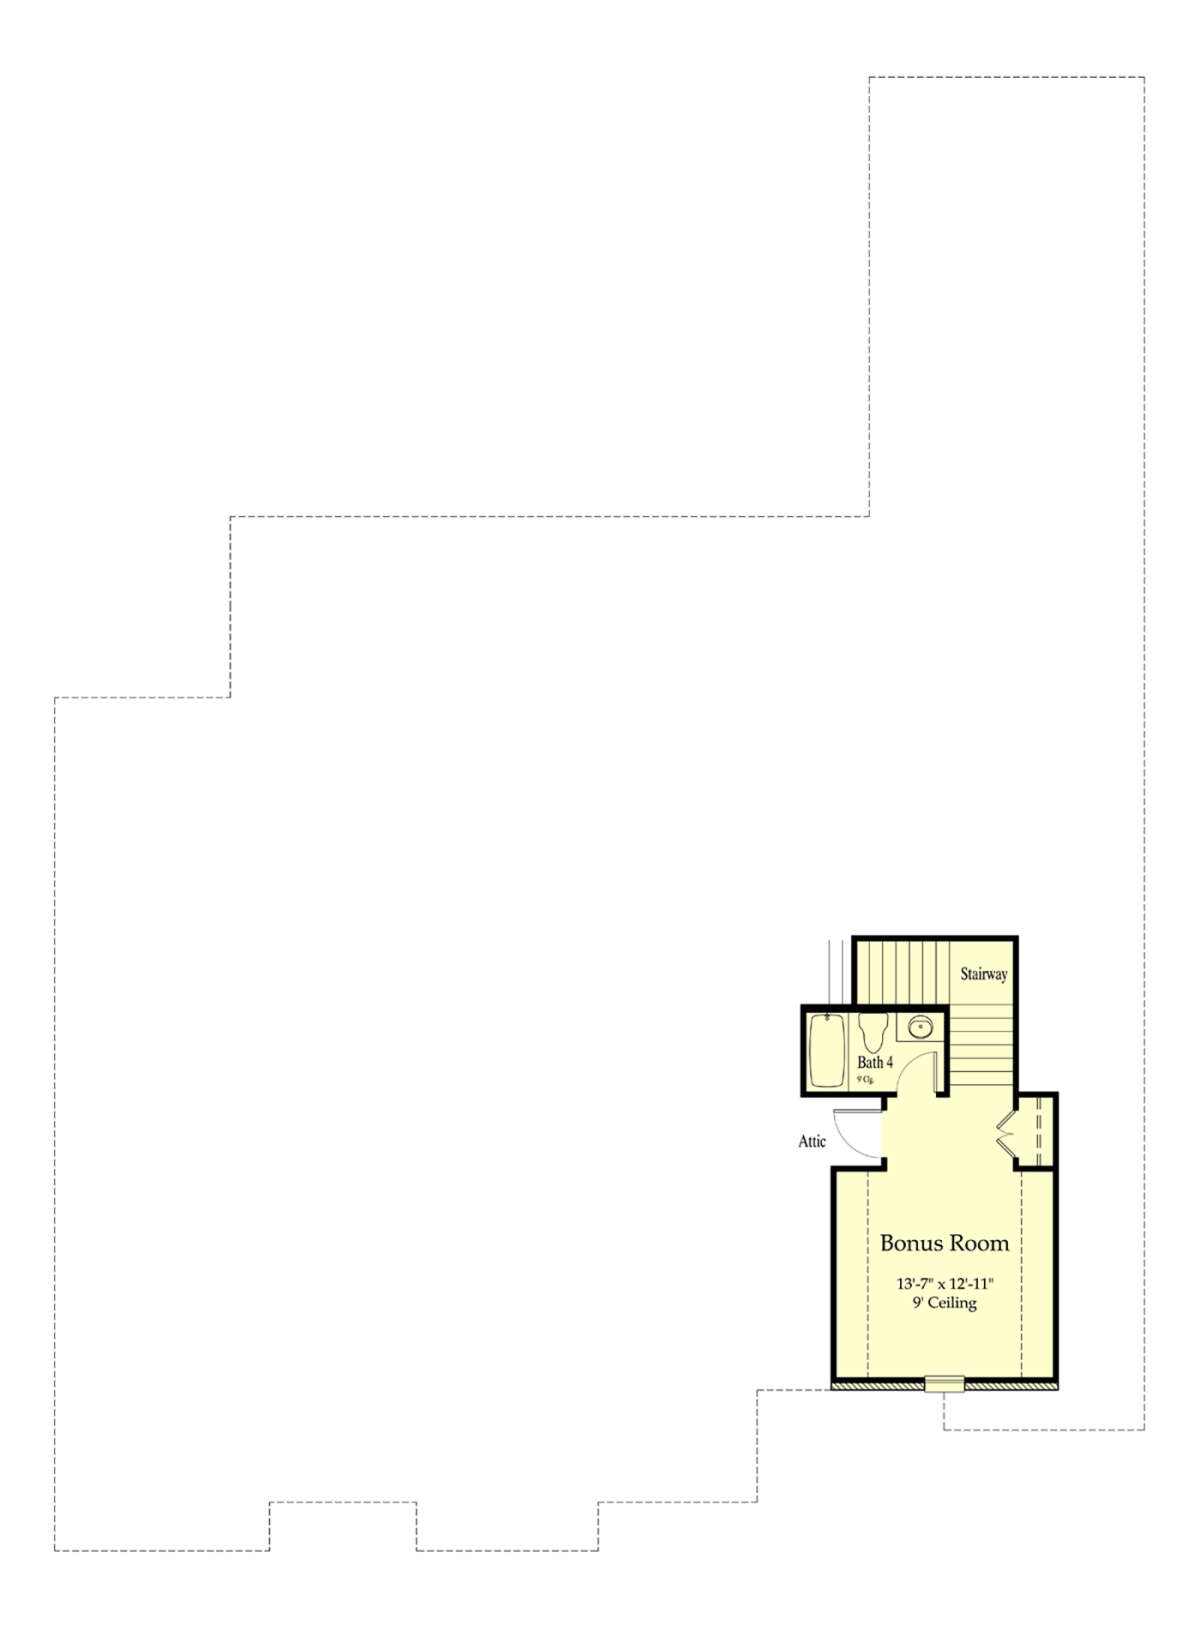 Bonus Room for House Plan #7516-00053